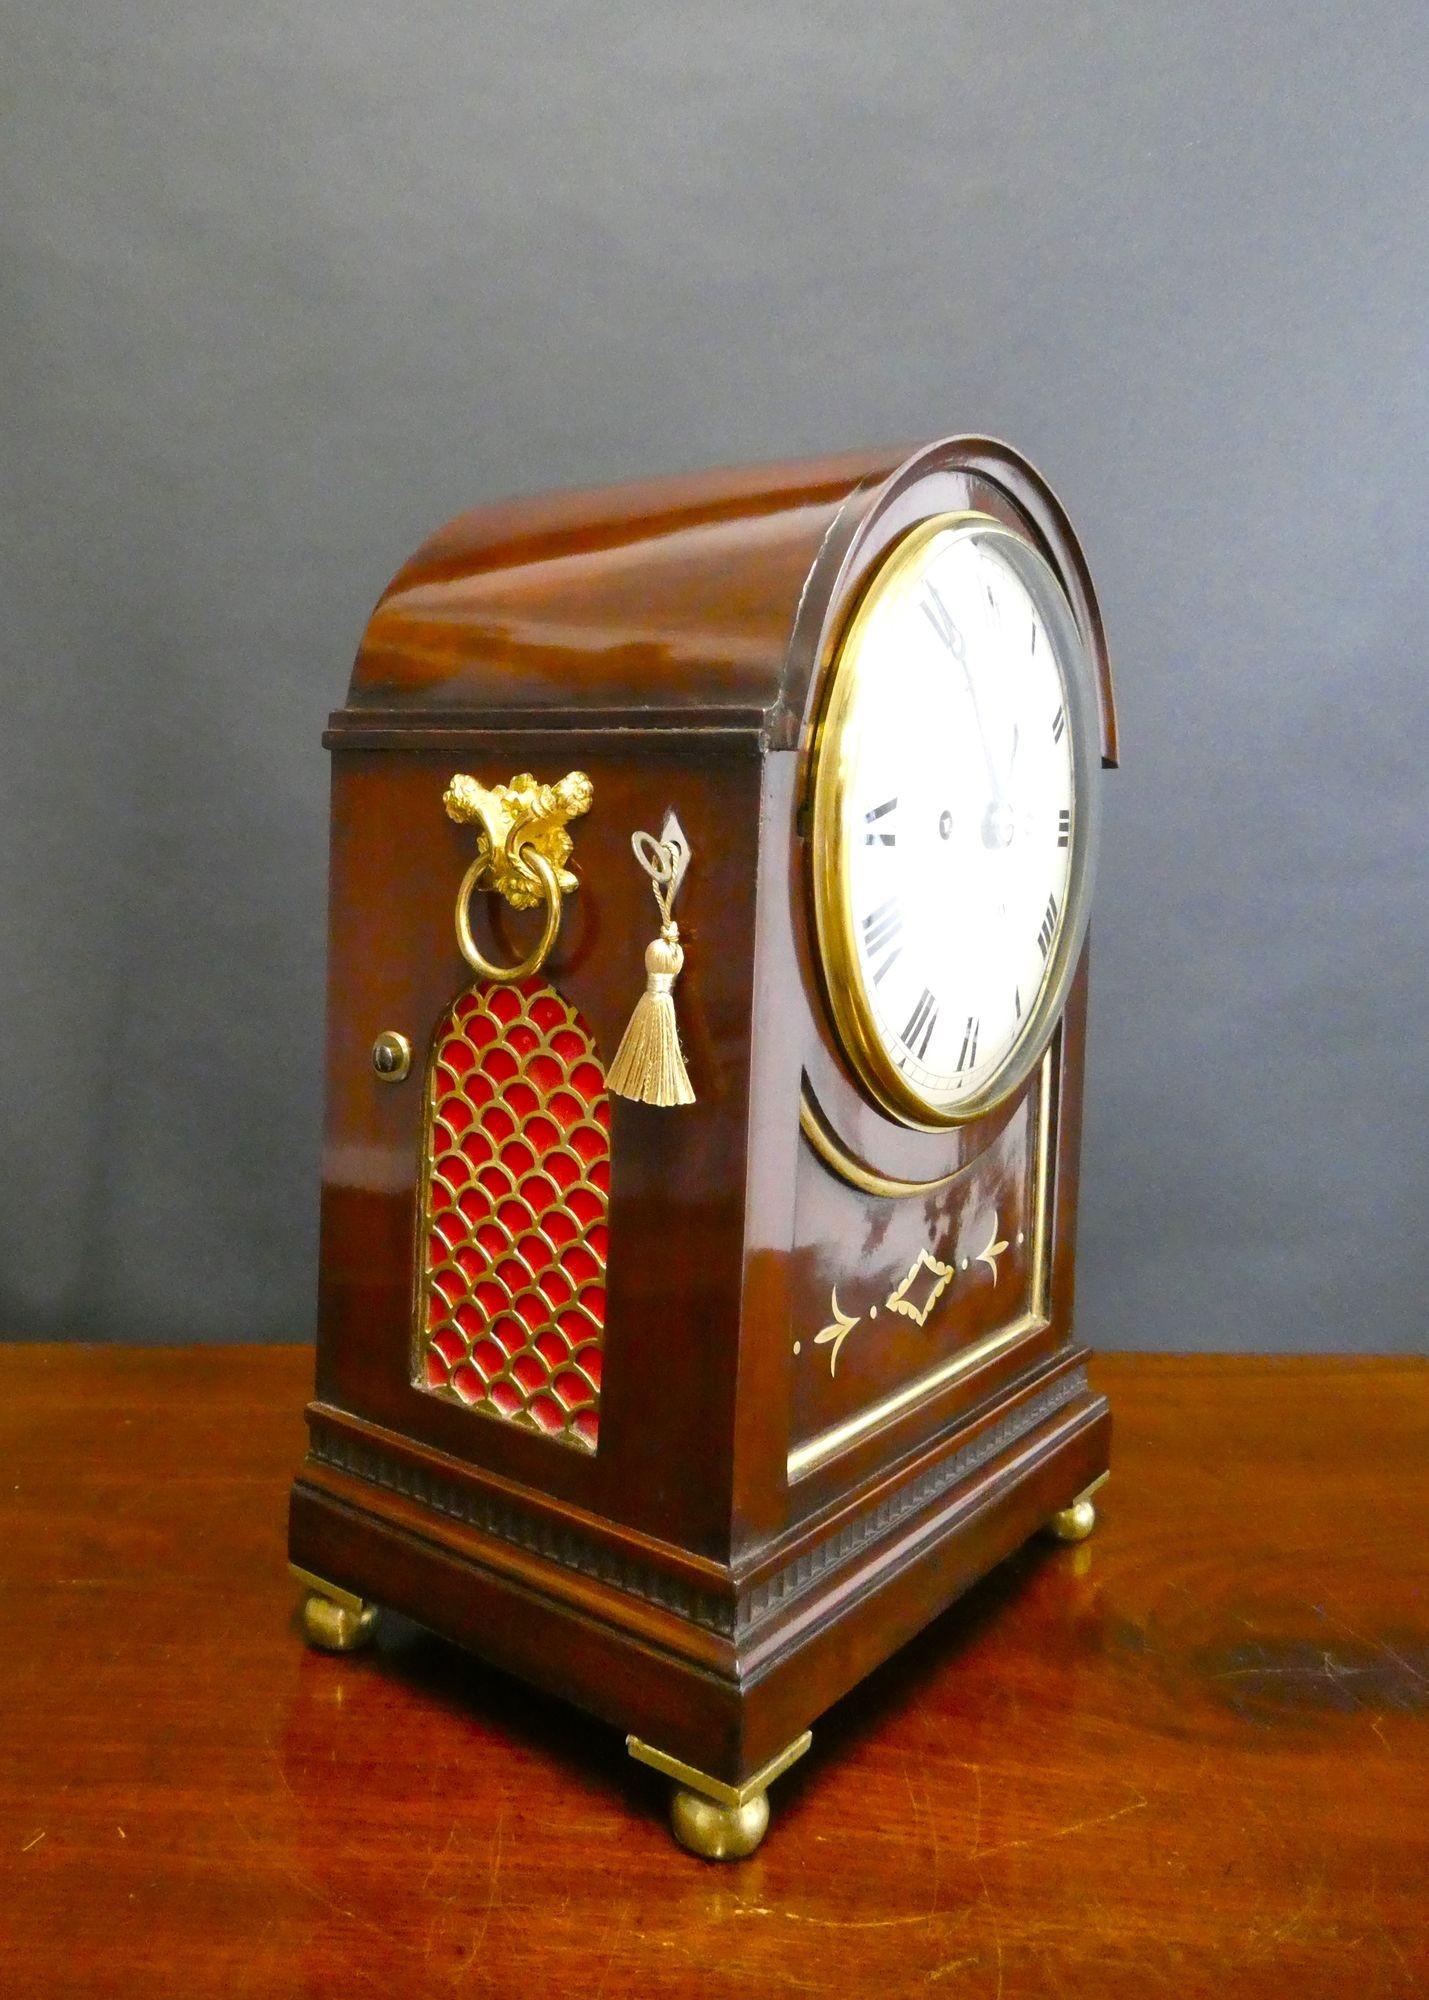 Edwardian Double Fusee Bracket Clock, Dent, London

Edwardian Konsole Uhr in einem Mahagoni-Bogen oben Gehäuse mit eingefügten Frontplatte in Messing mit Messing-Inlay, abgestufte Sockel mit dentil Leistendekoration ruht auf vier Messing-Kugelfüße